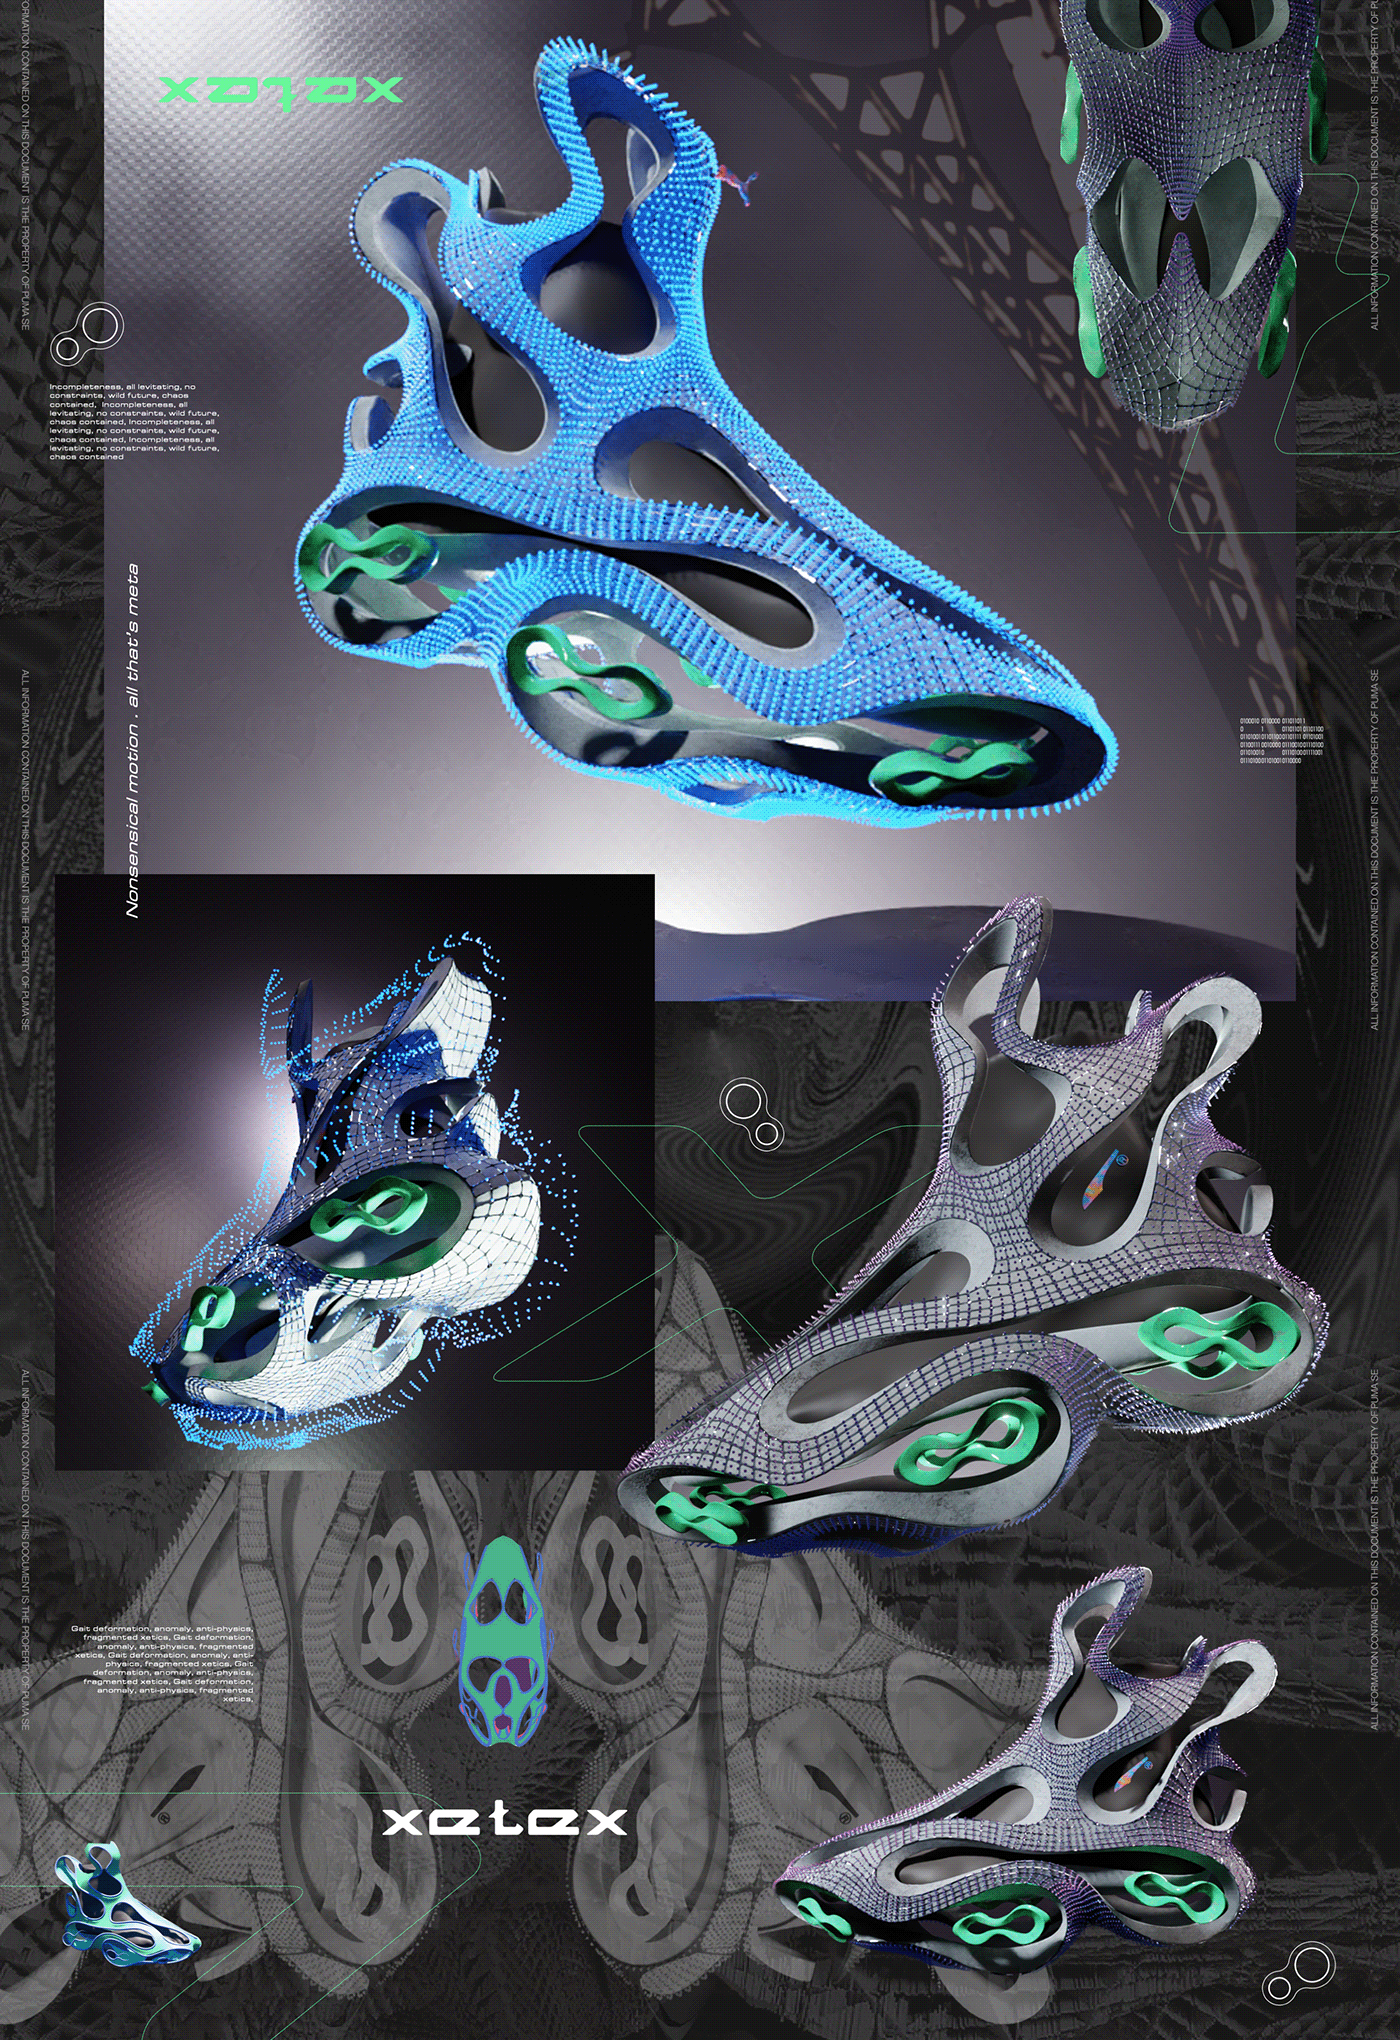 innovation Fashion  footwear design 3D blender nft metaverse Digital Art  concept